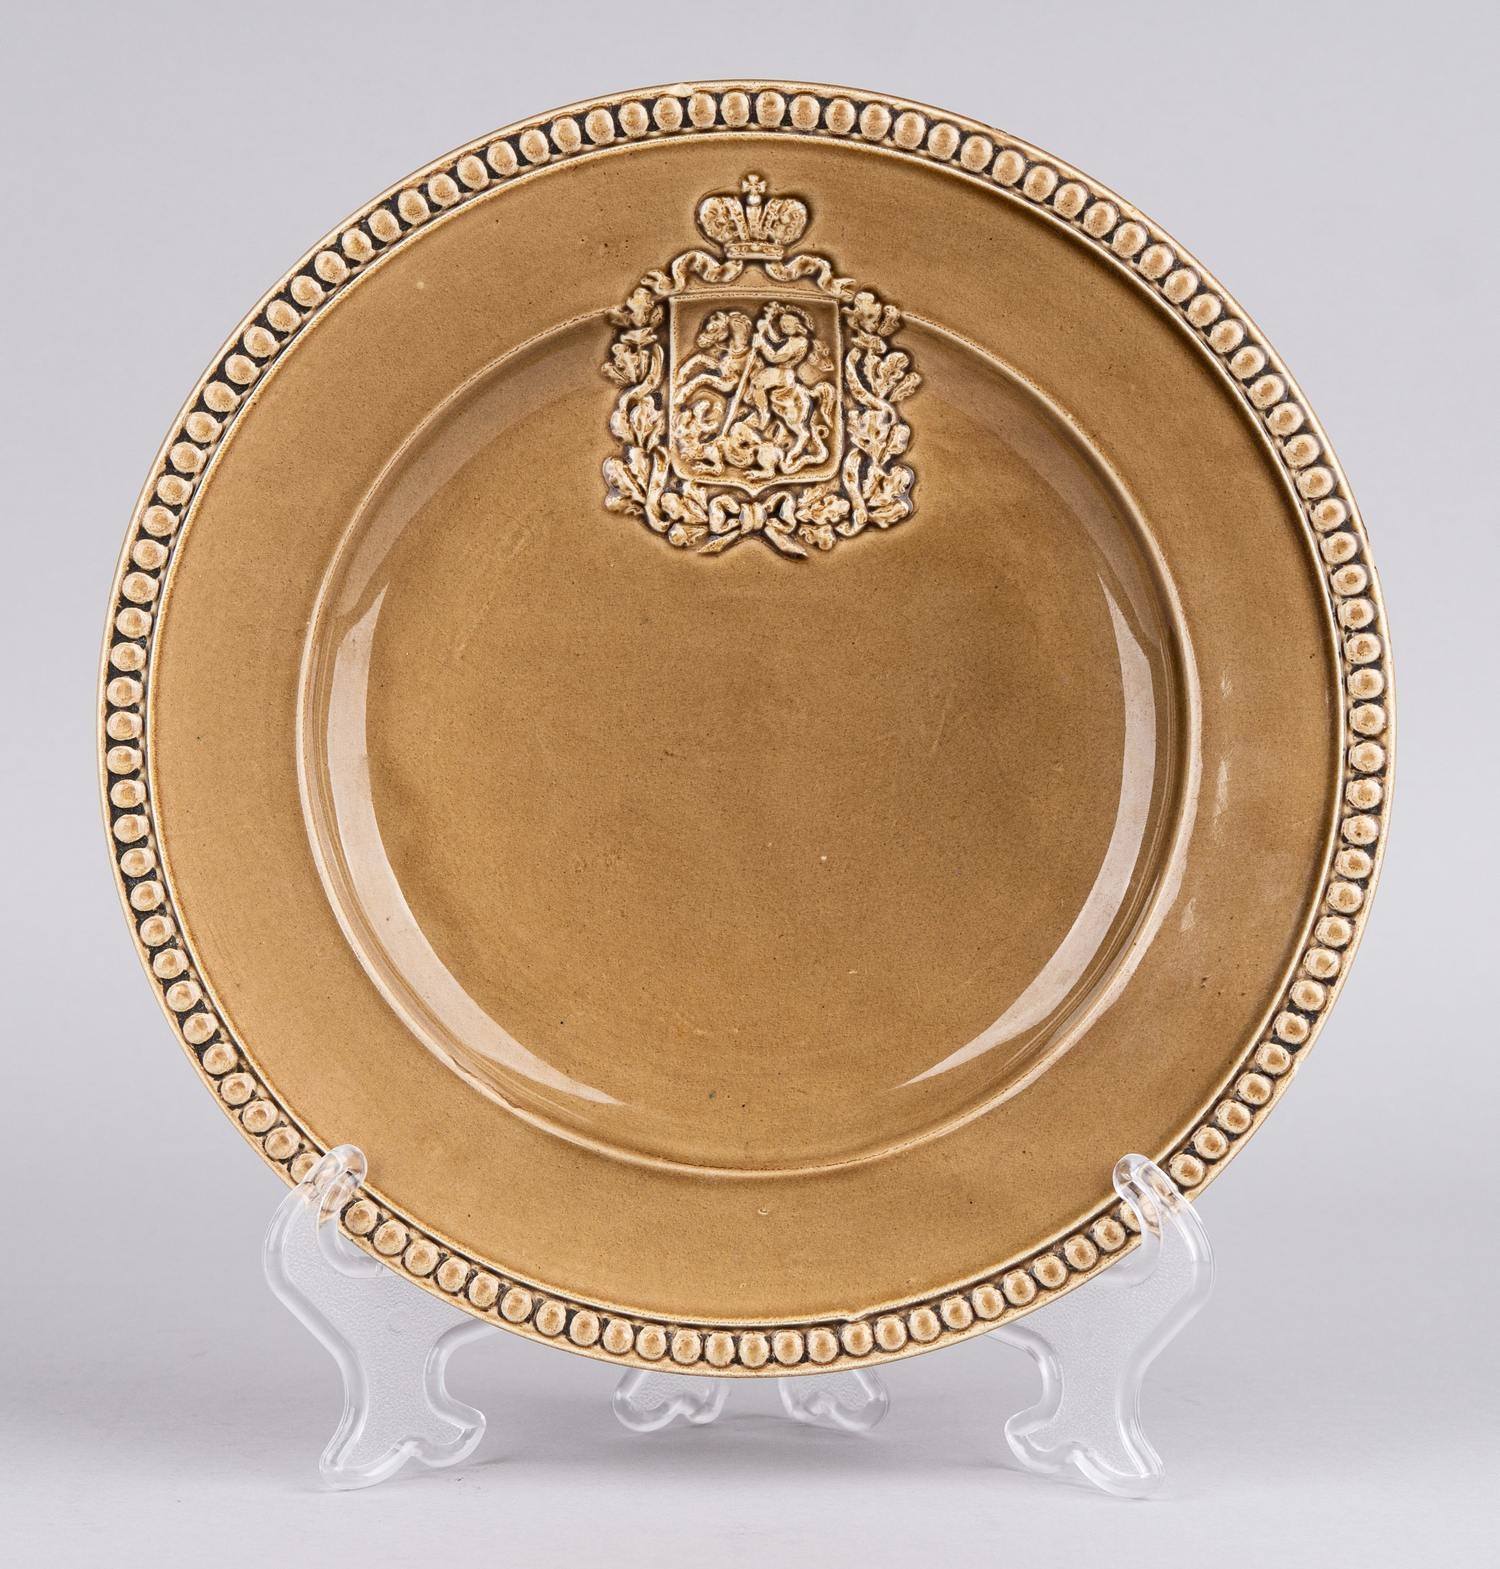 Фарфоровая тарелка на коронацию императора Николая II. Российская империя, 1896 г.